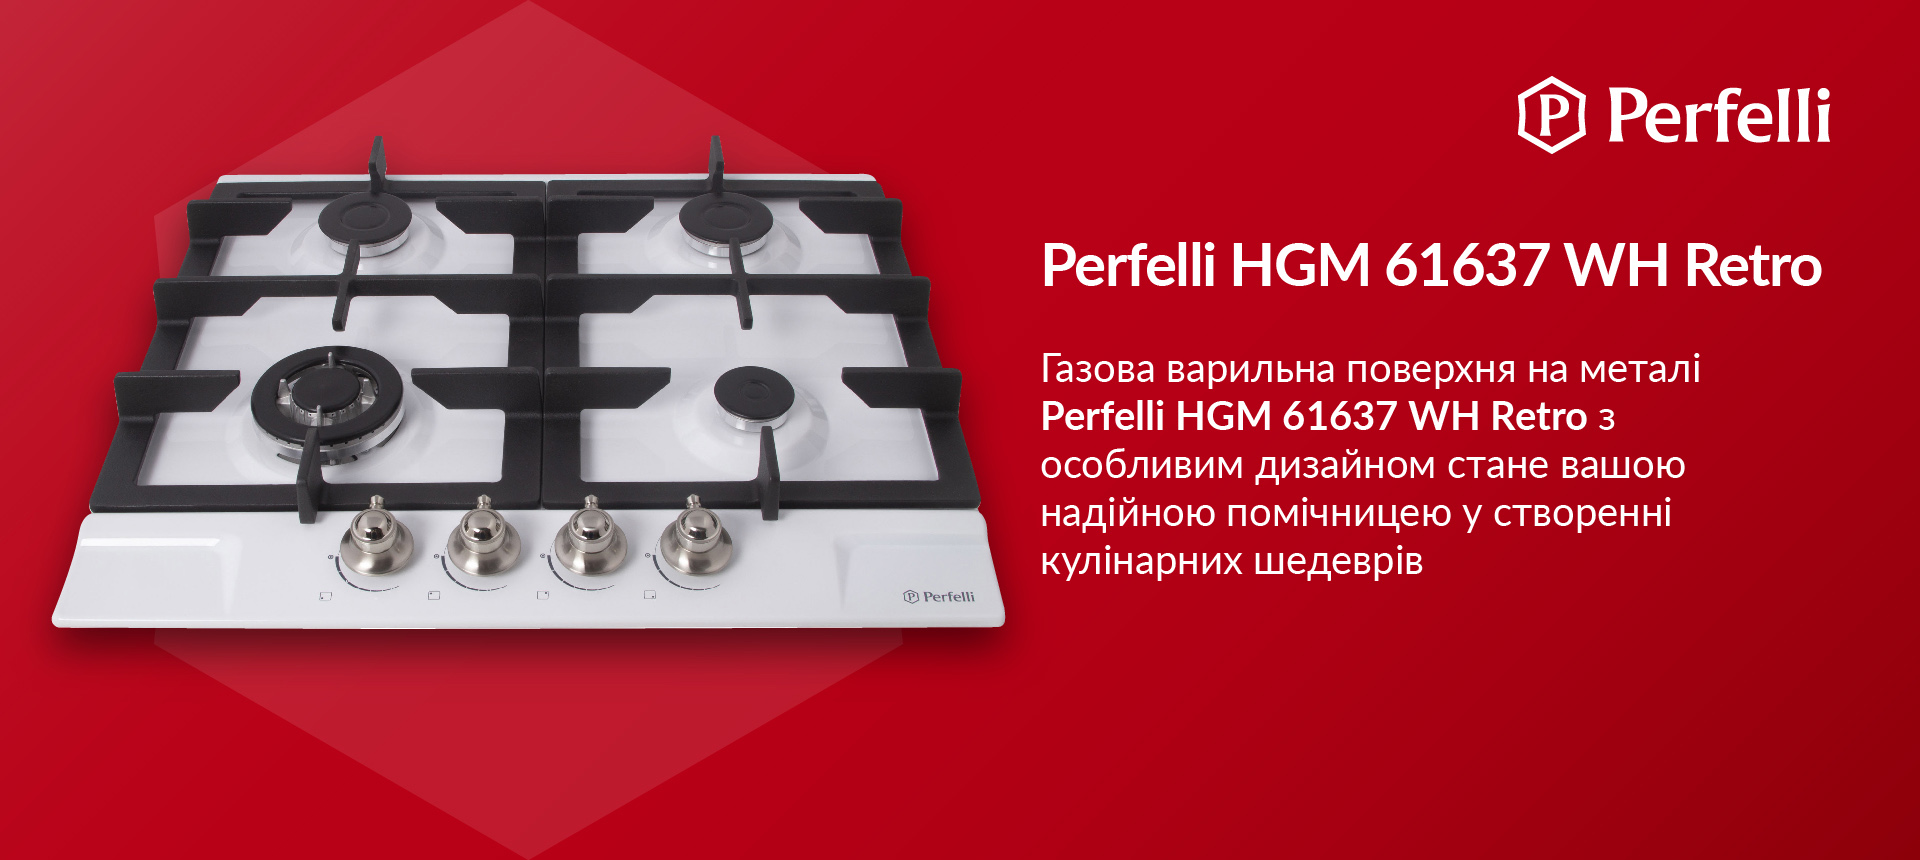 Газова варильна поверхня на металі Perfelli HGM 61637 WH RETRO з особливим дизайном стане вашою надійною помічницею у створенні кулінарних шедеврів